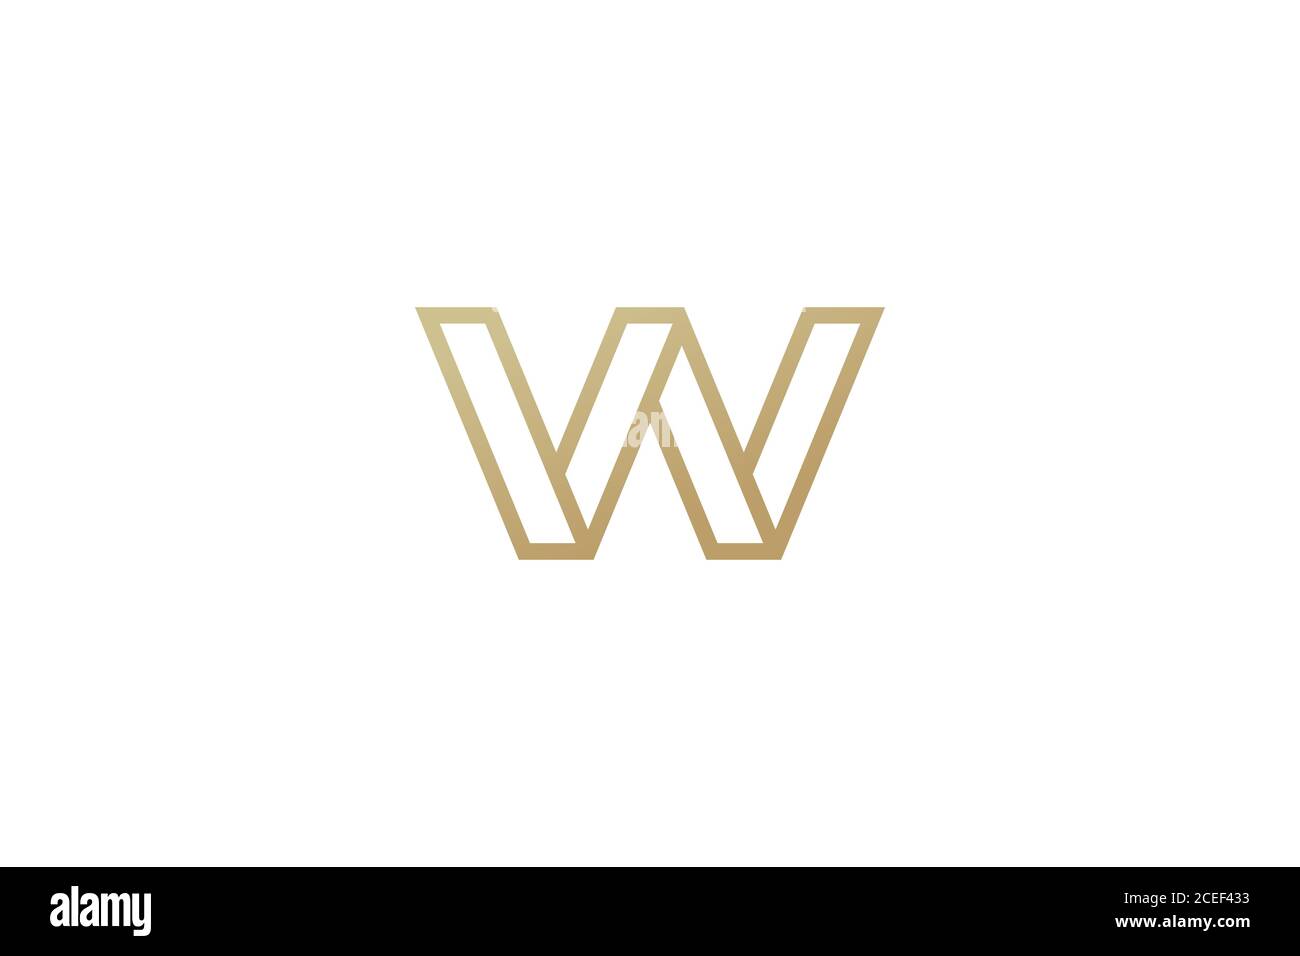 Letter W logo design . abstract letter W monogram logotype. vector illustration Stock Vector